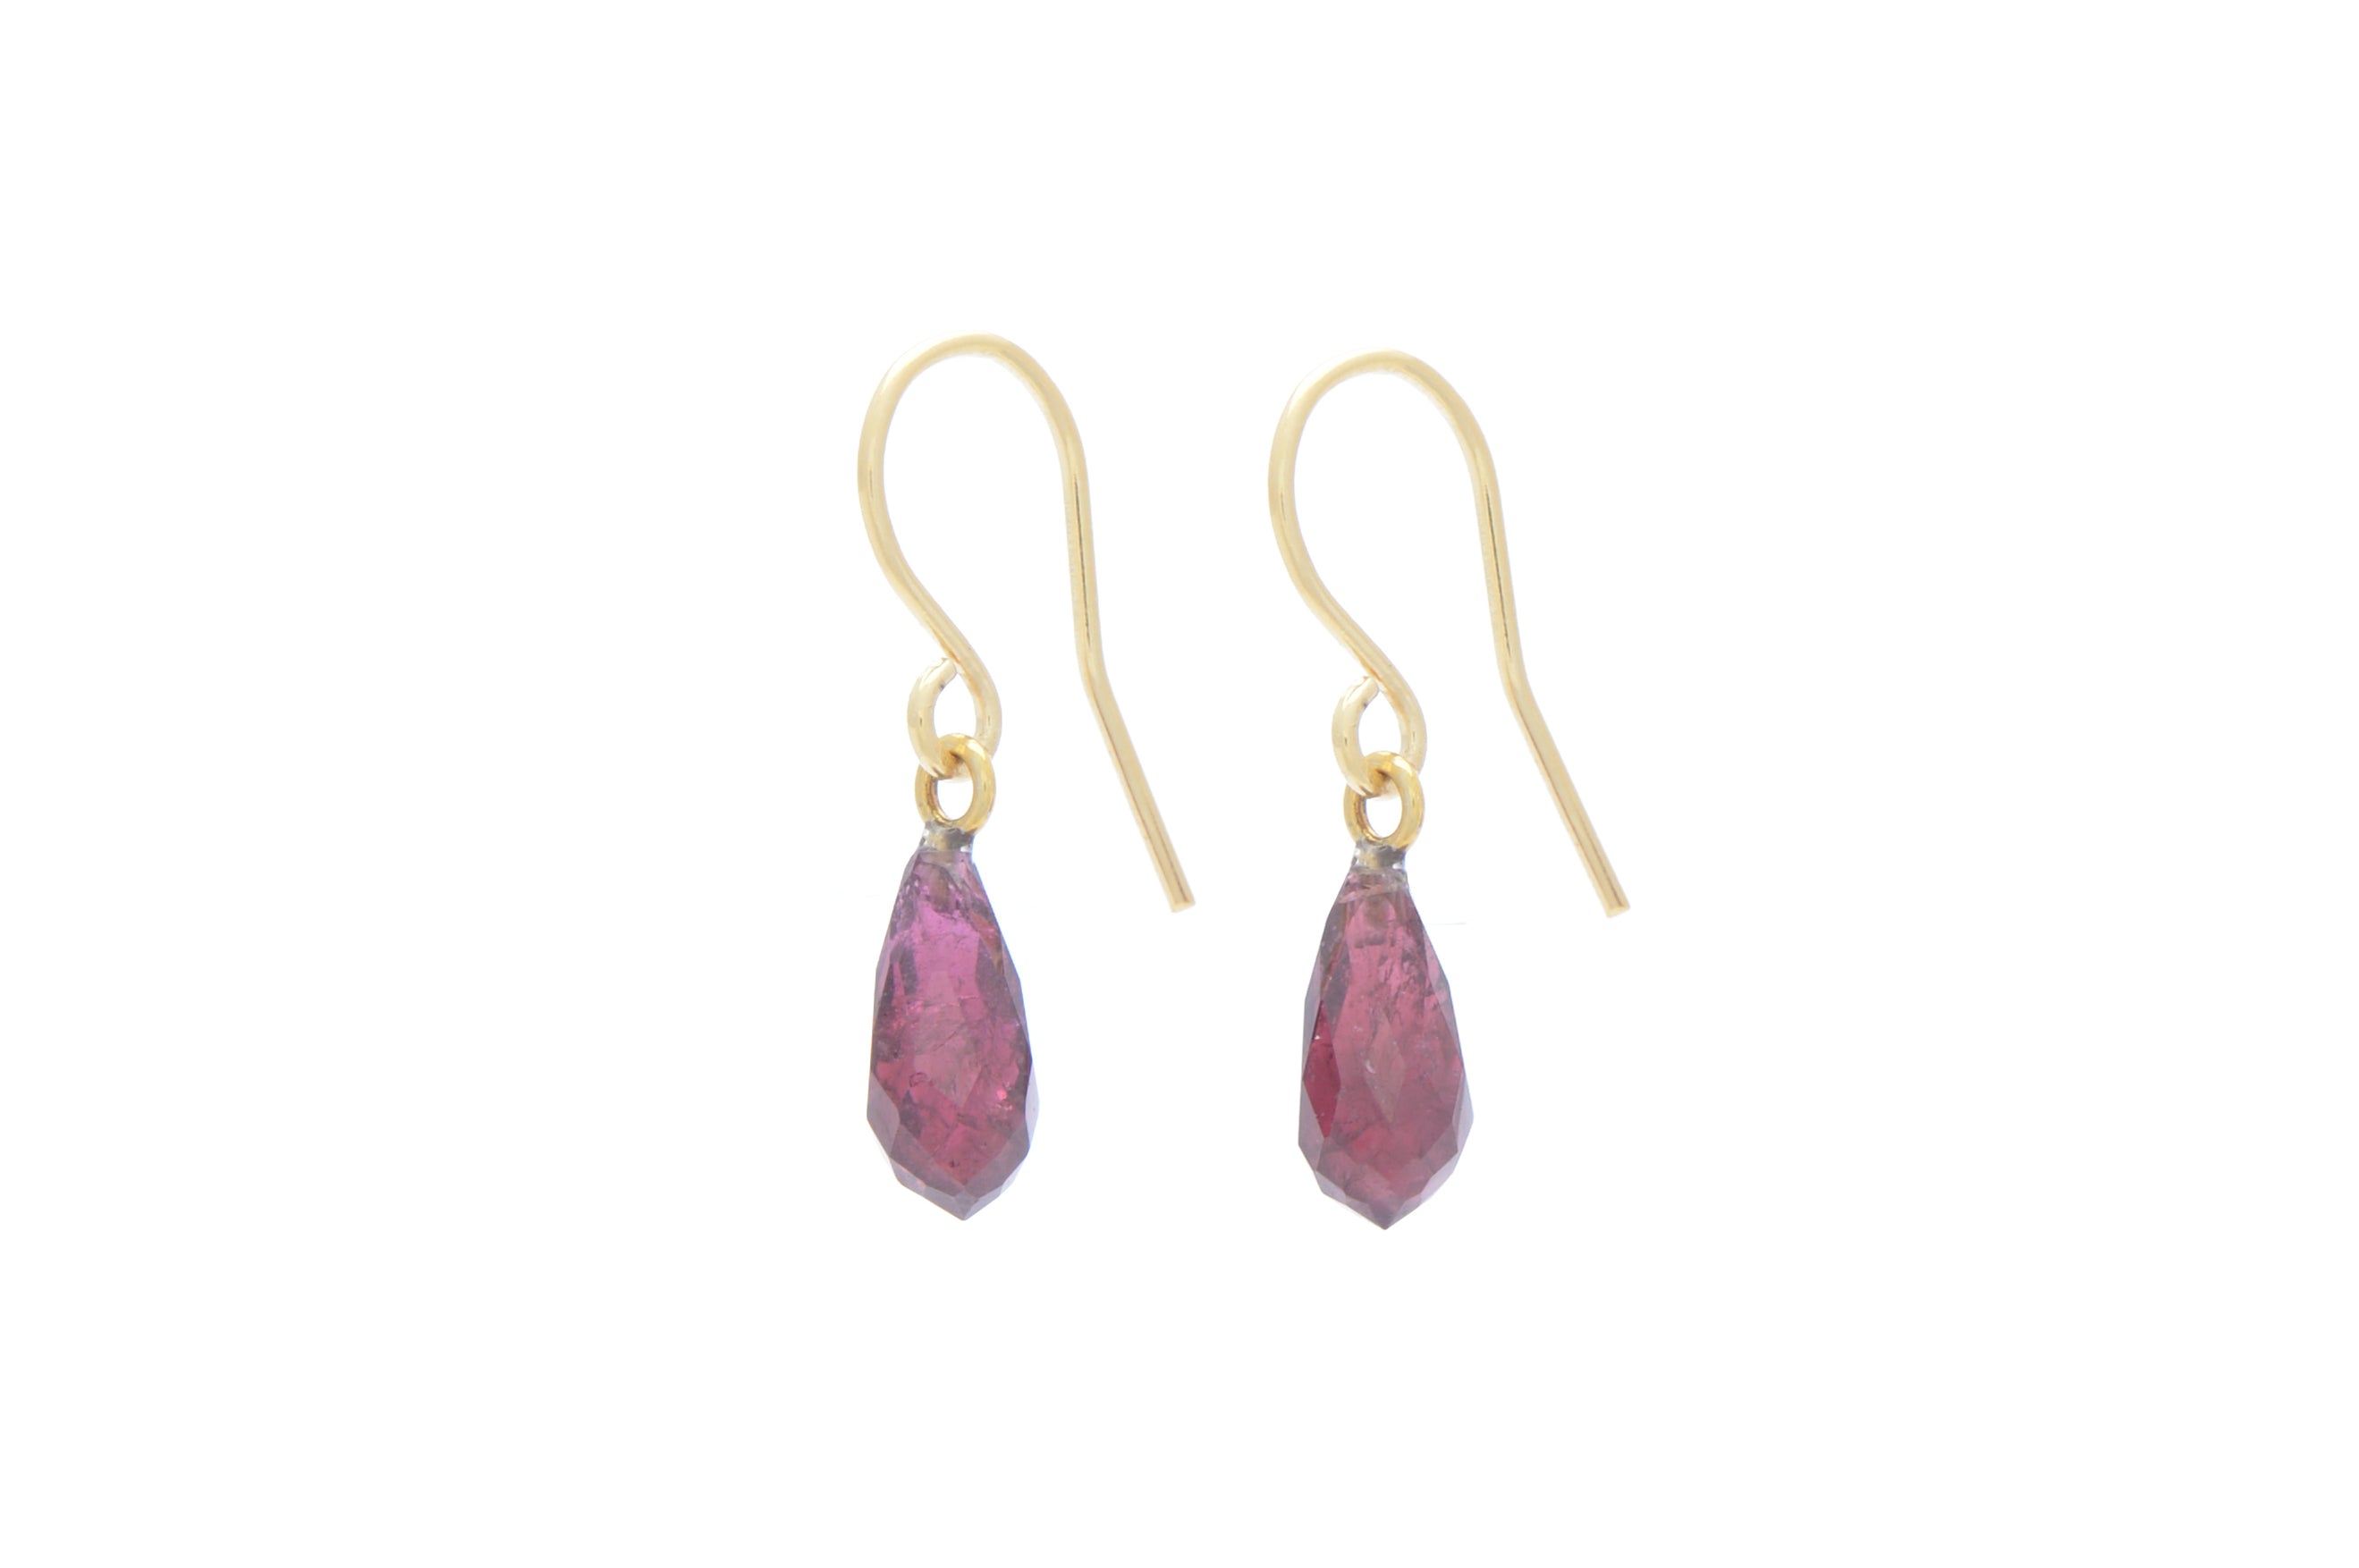 Wouters & Hendrix - silver earrings with purple grenade drops